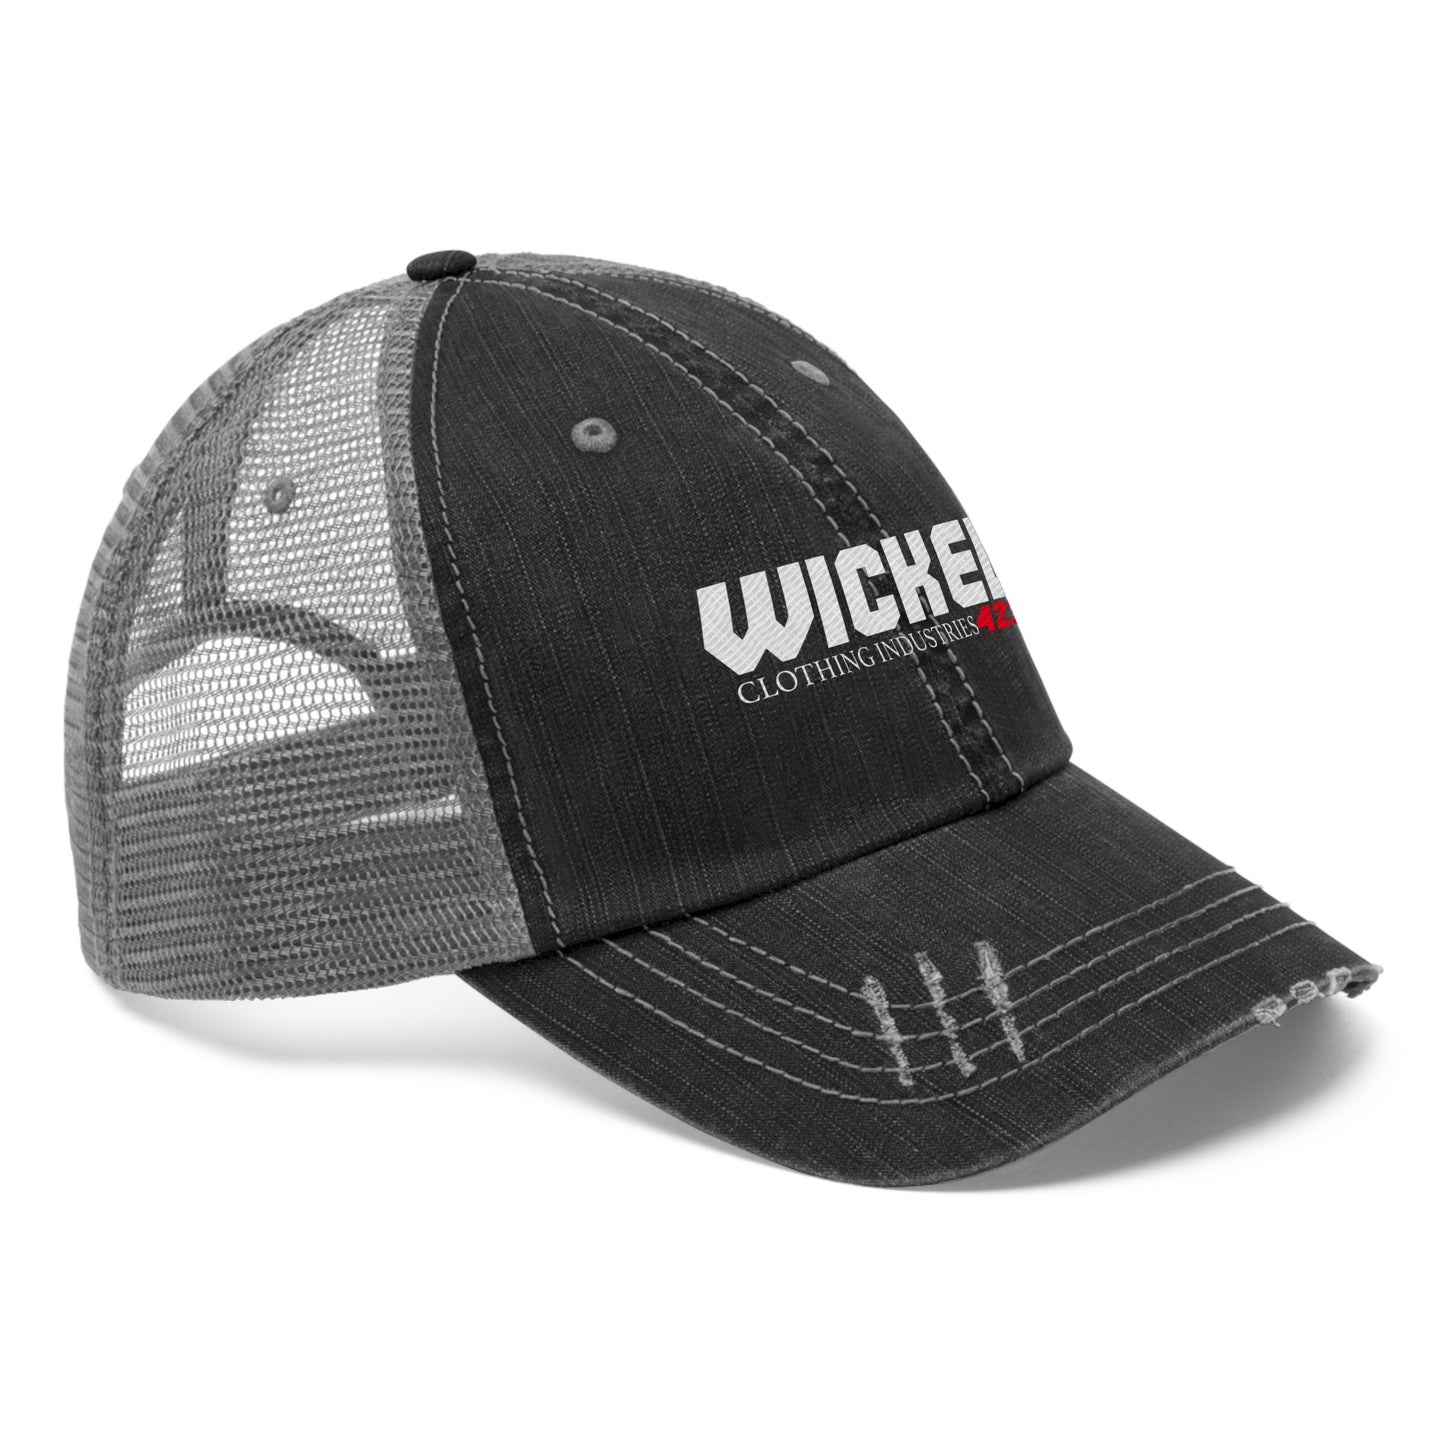 Wicked 423 Trucker Hat